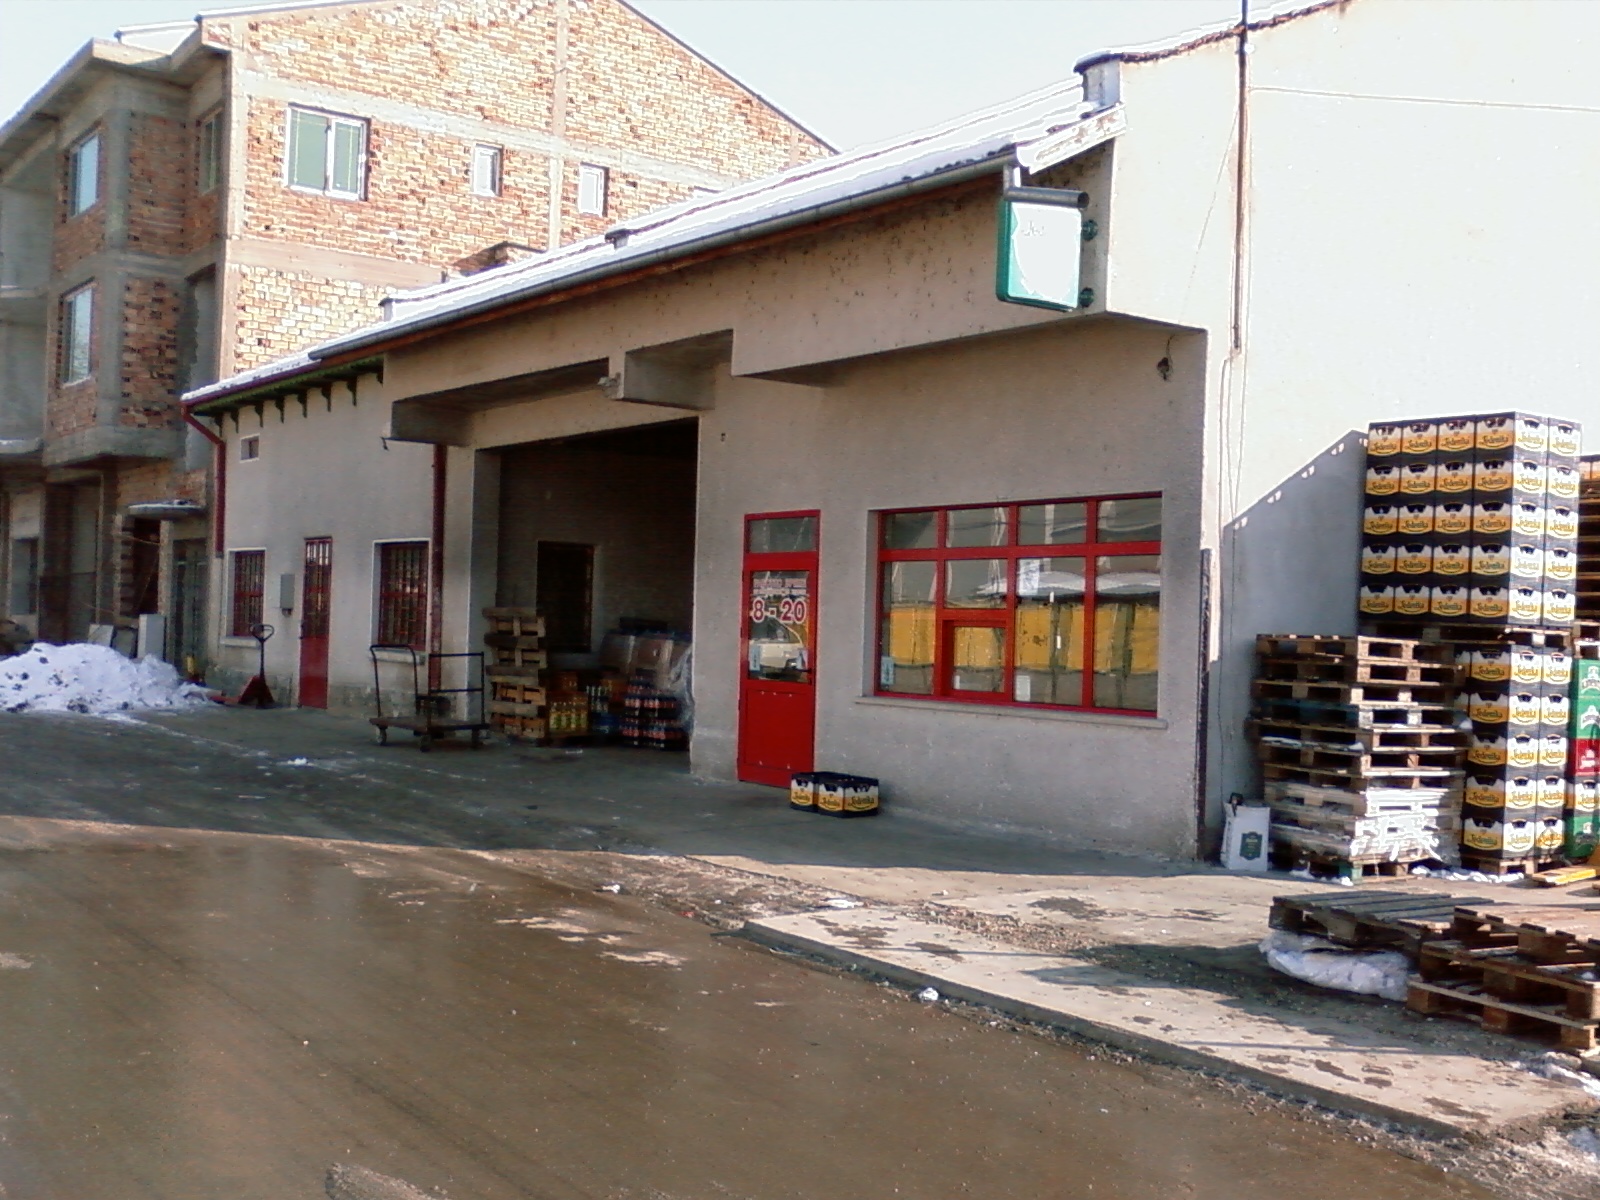 Продава се функциониращ склад с дейтващ бизнес за продажба на едро на напитки и хранителни стоки в гр. Мездра обл. Враца